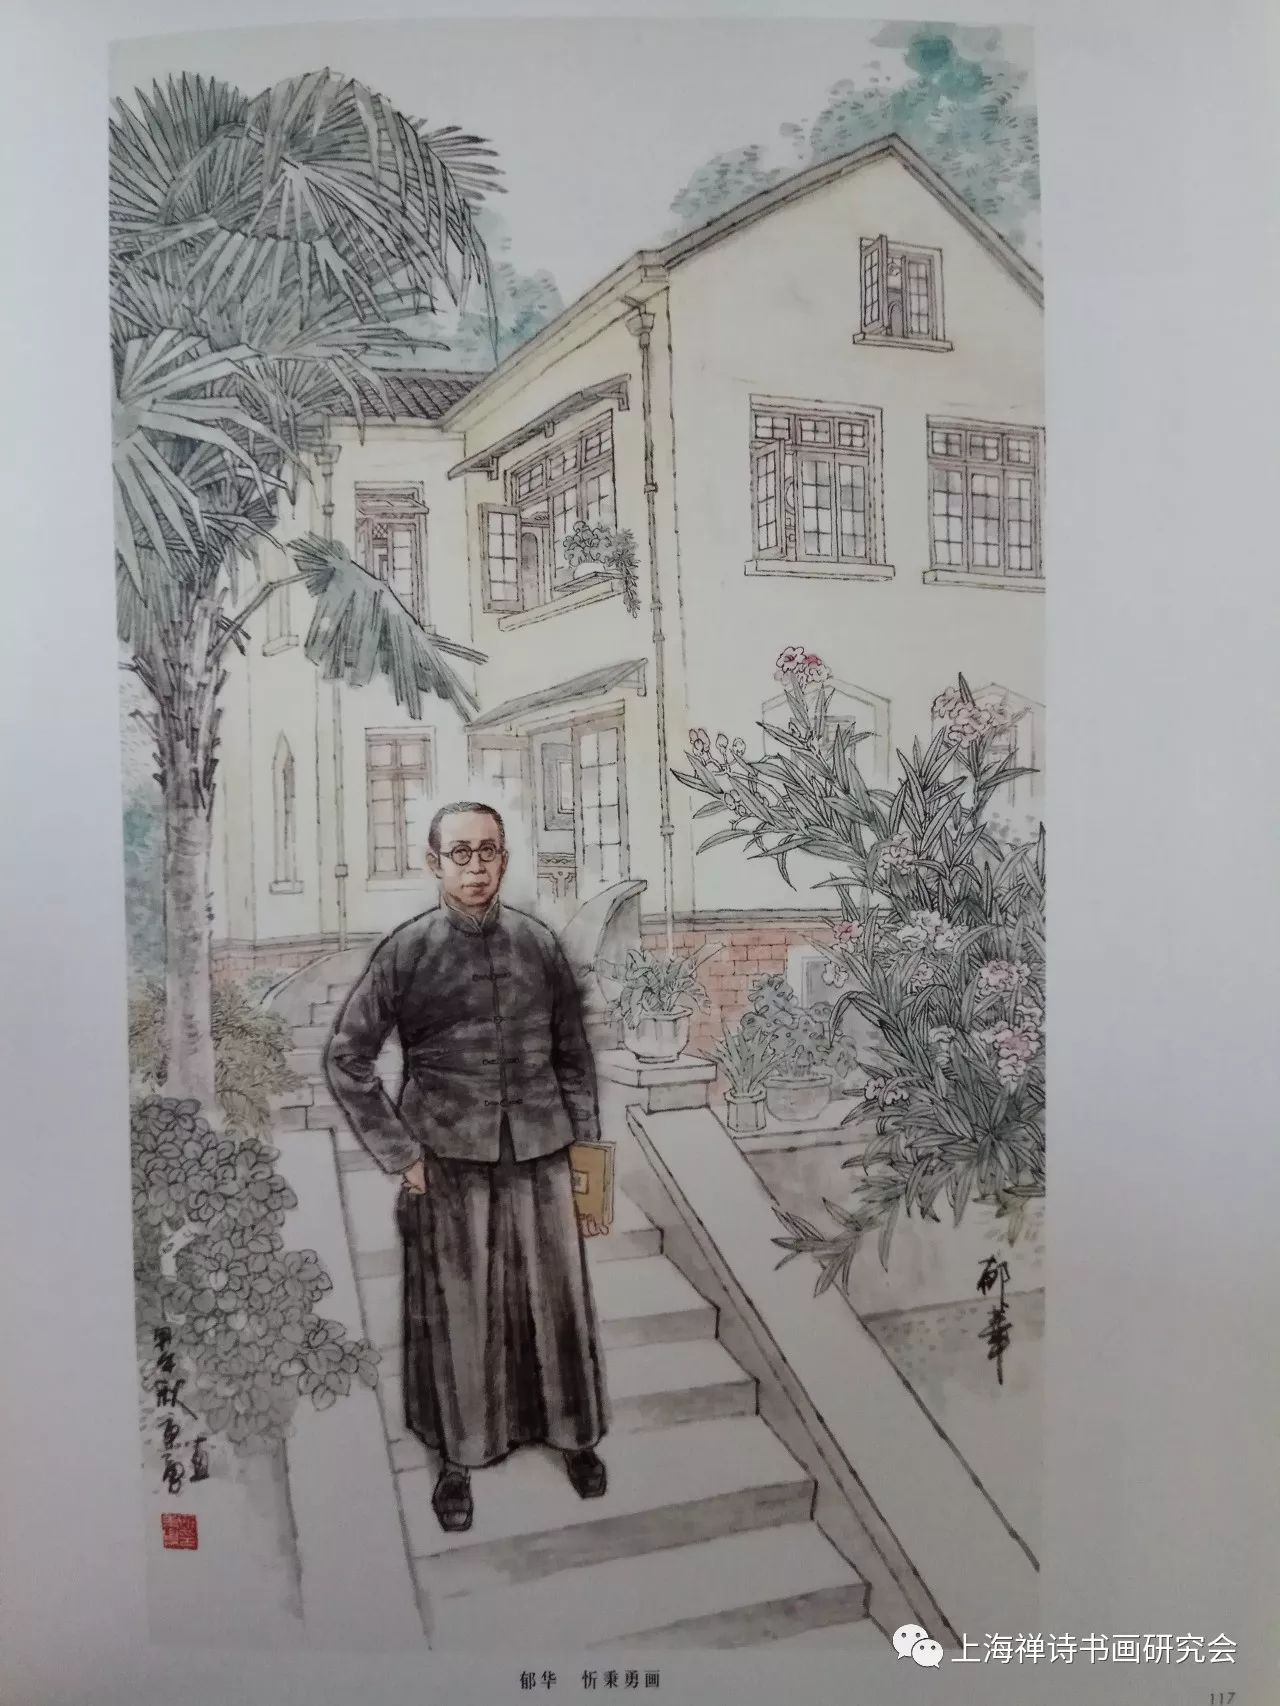 国画家通过笔下的名人带你领略梧桐树下上海老洋房的魅力